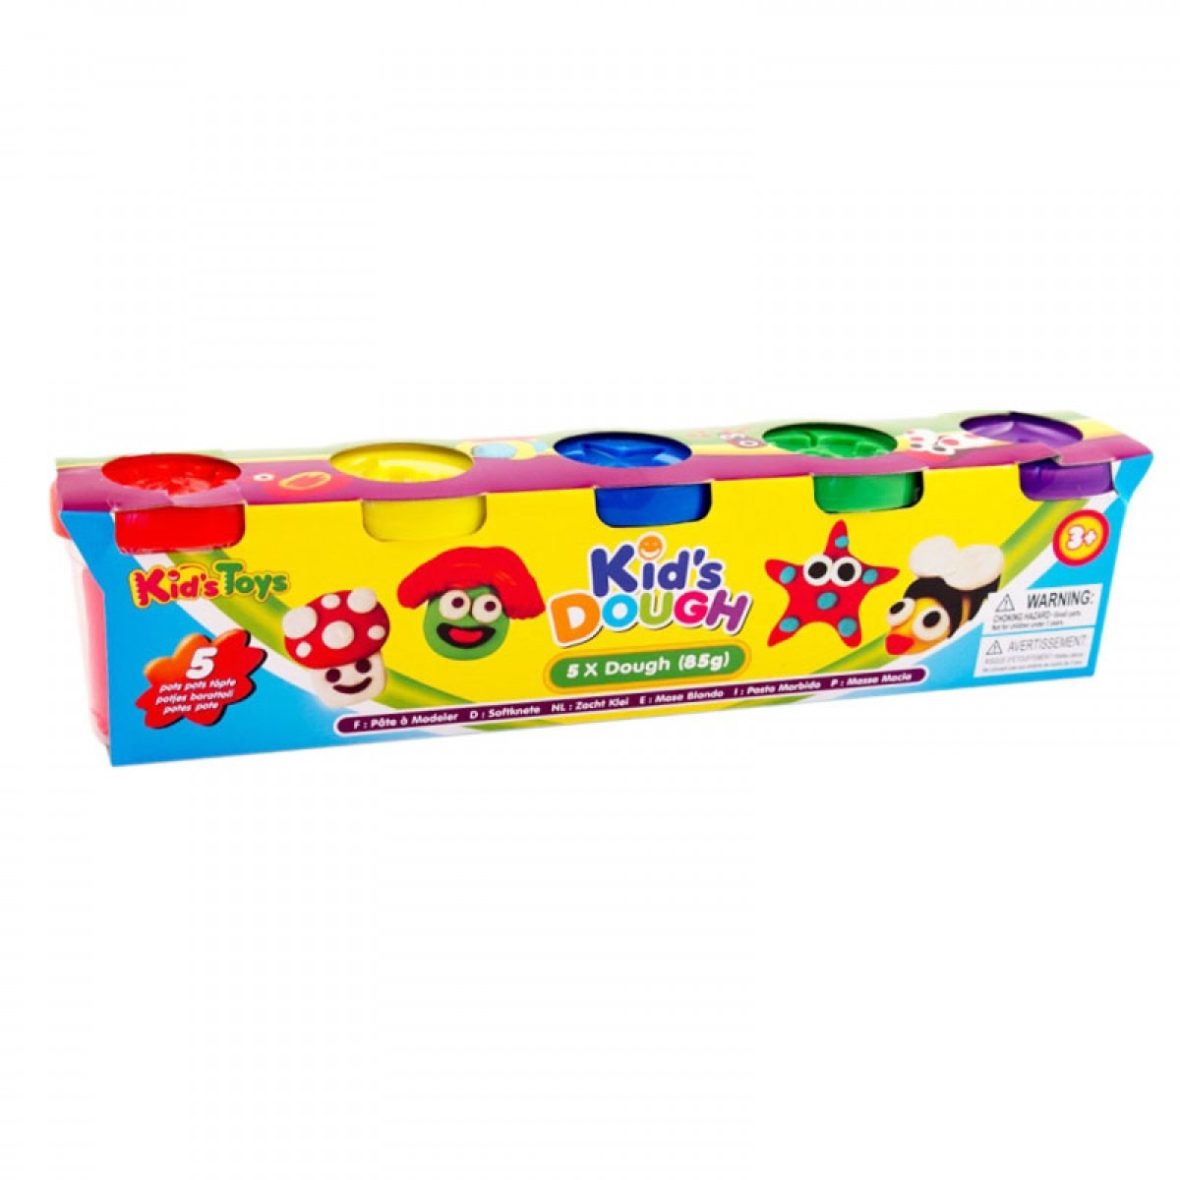 Kids Play Dough – 5 pieces